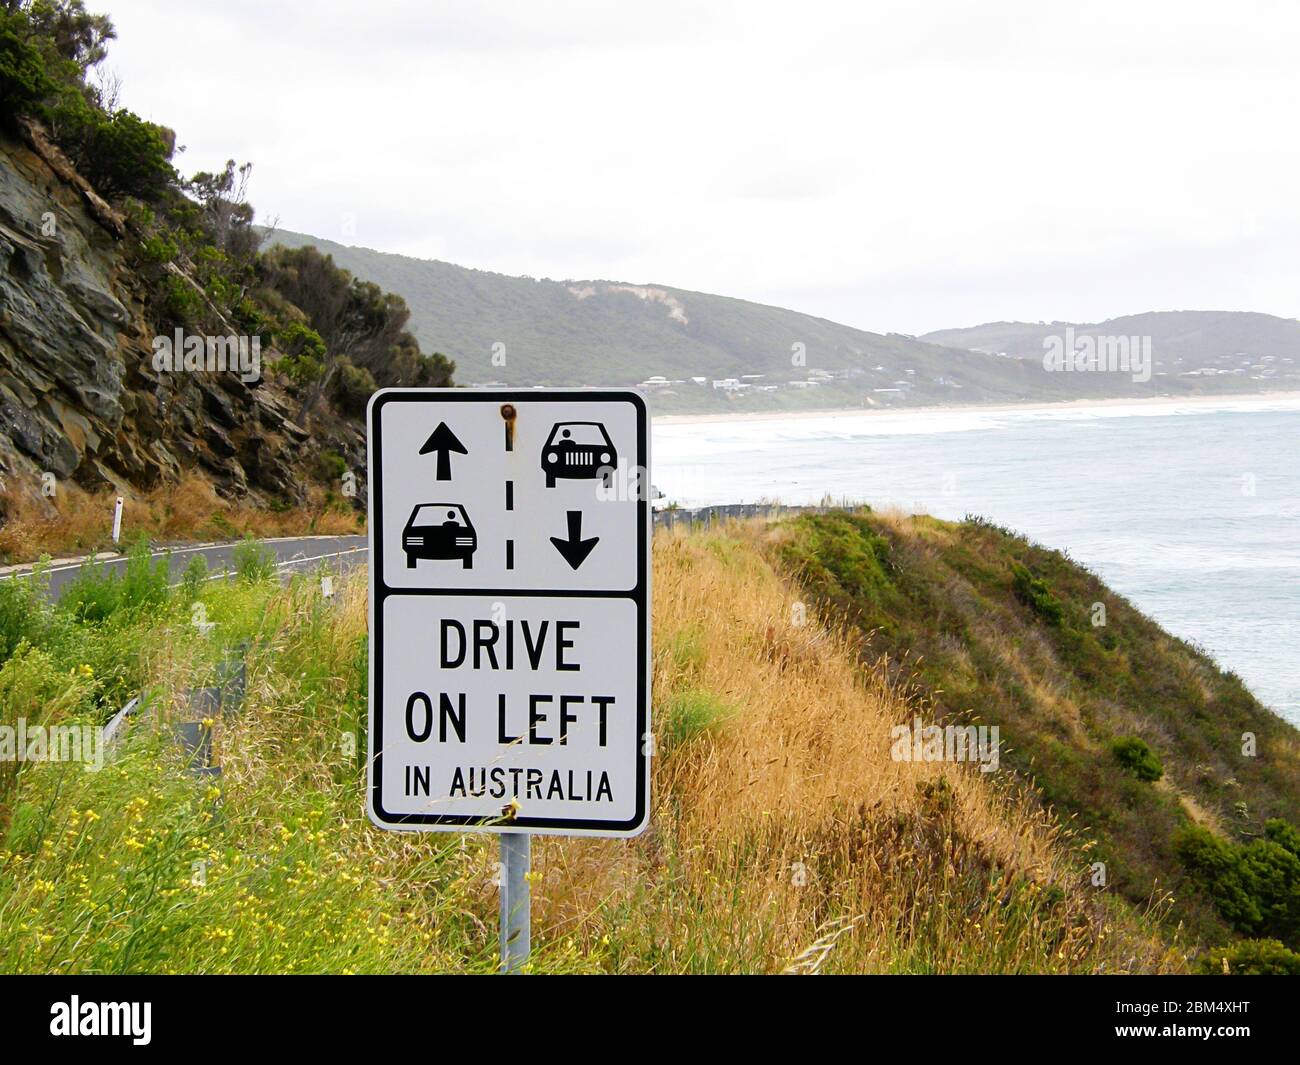 Panneau de signalisation australien pour rappeler aux conducteurs de conduire sur le côté gauche de la route. Avec l'océan en arrière-plan. Banque D'Images